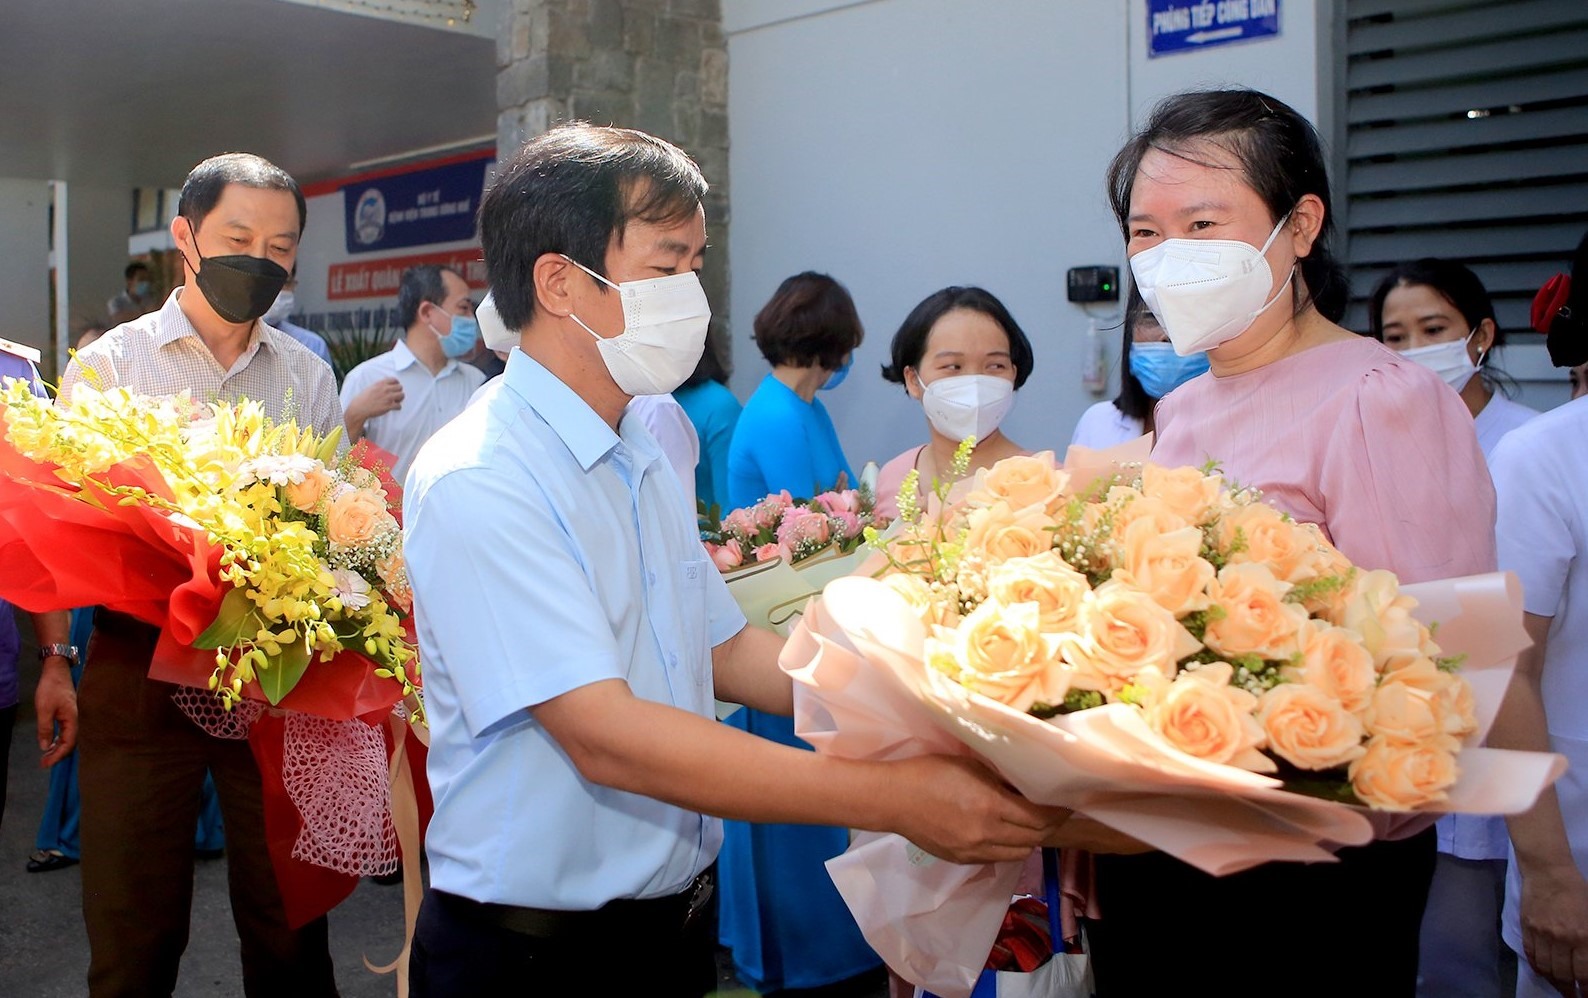 Chủ tịch UBND tỉnh Thừa Thiên Huế Nguyễn Văn Phương tặng hoa động viên các y, bác sĩ trong đoàn công tác của Bệnh viện Trung ương Huế trước lúc lên đường.